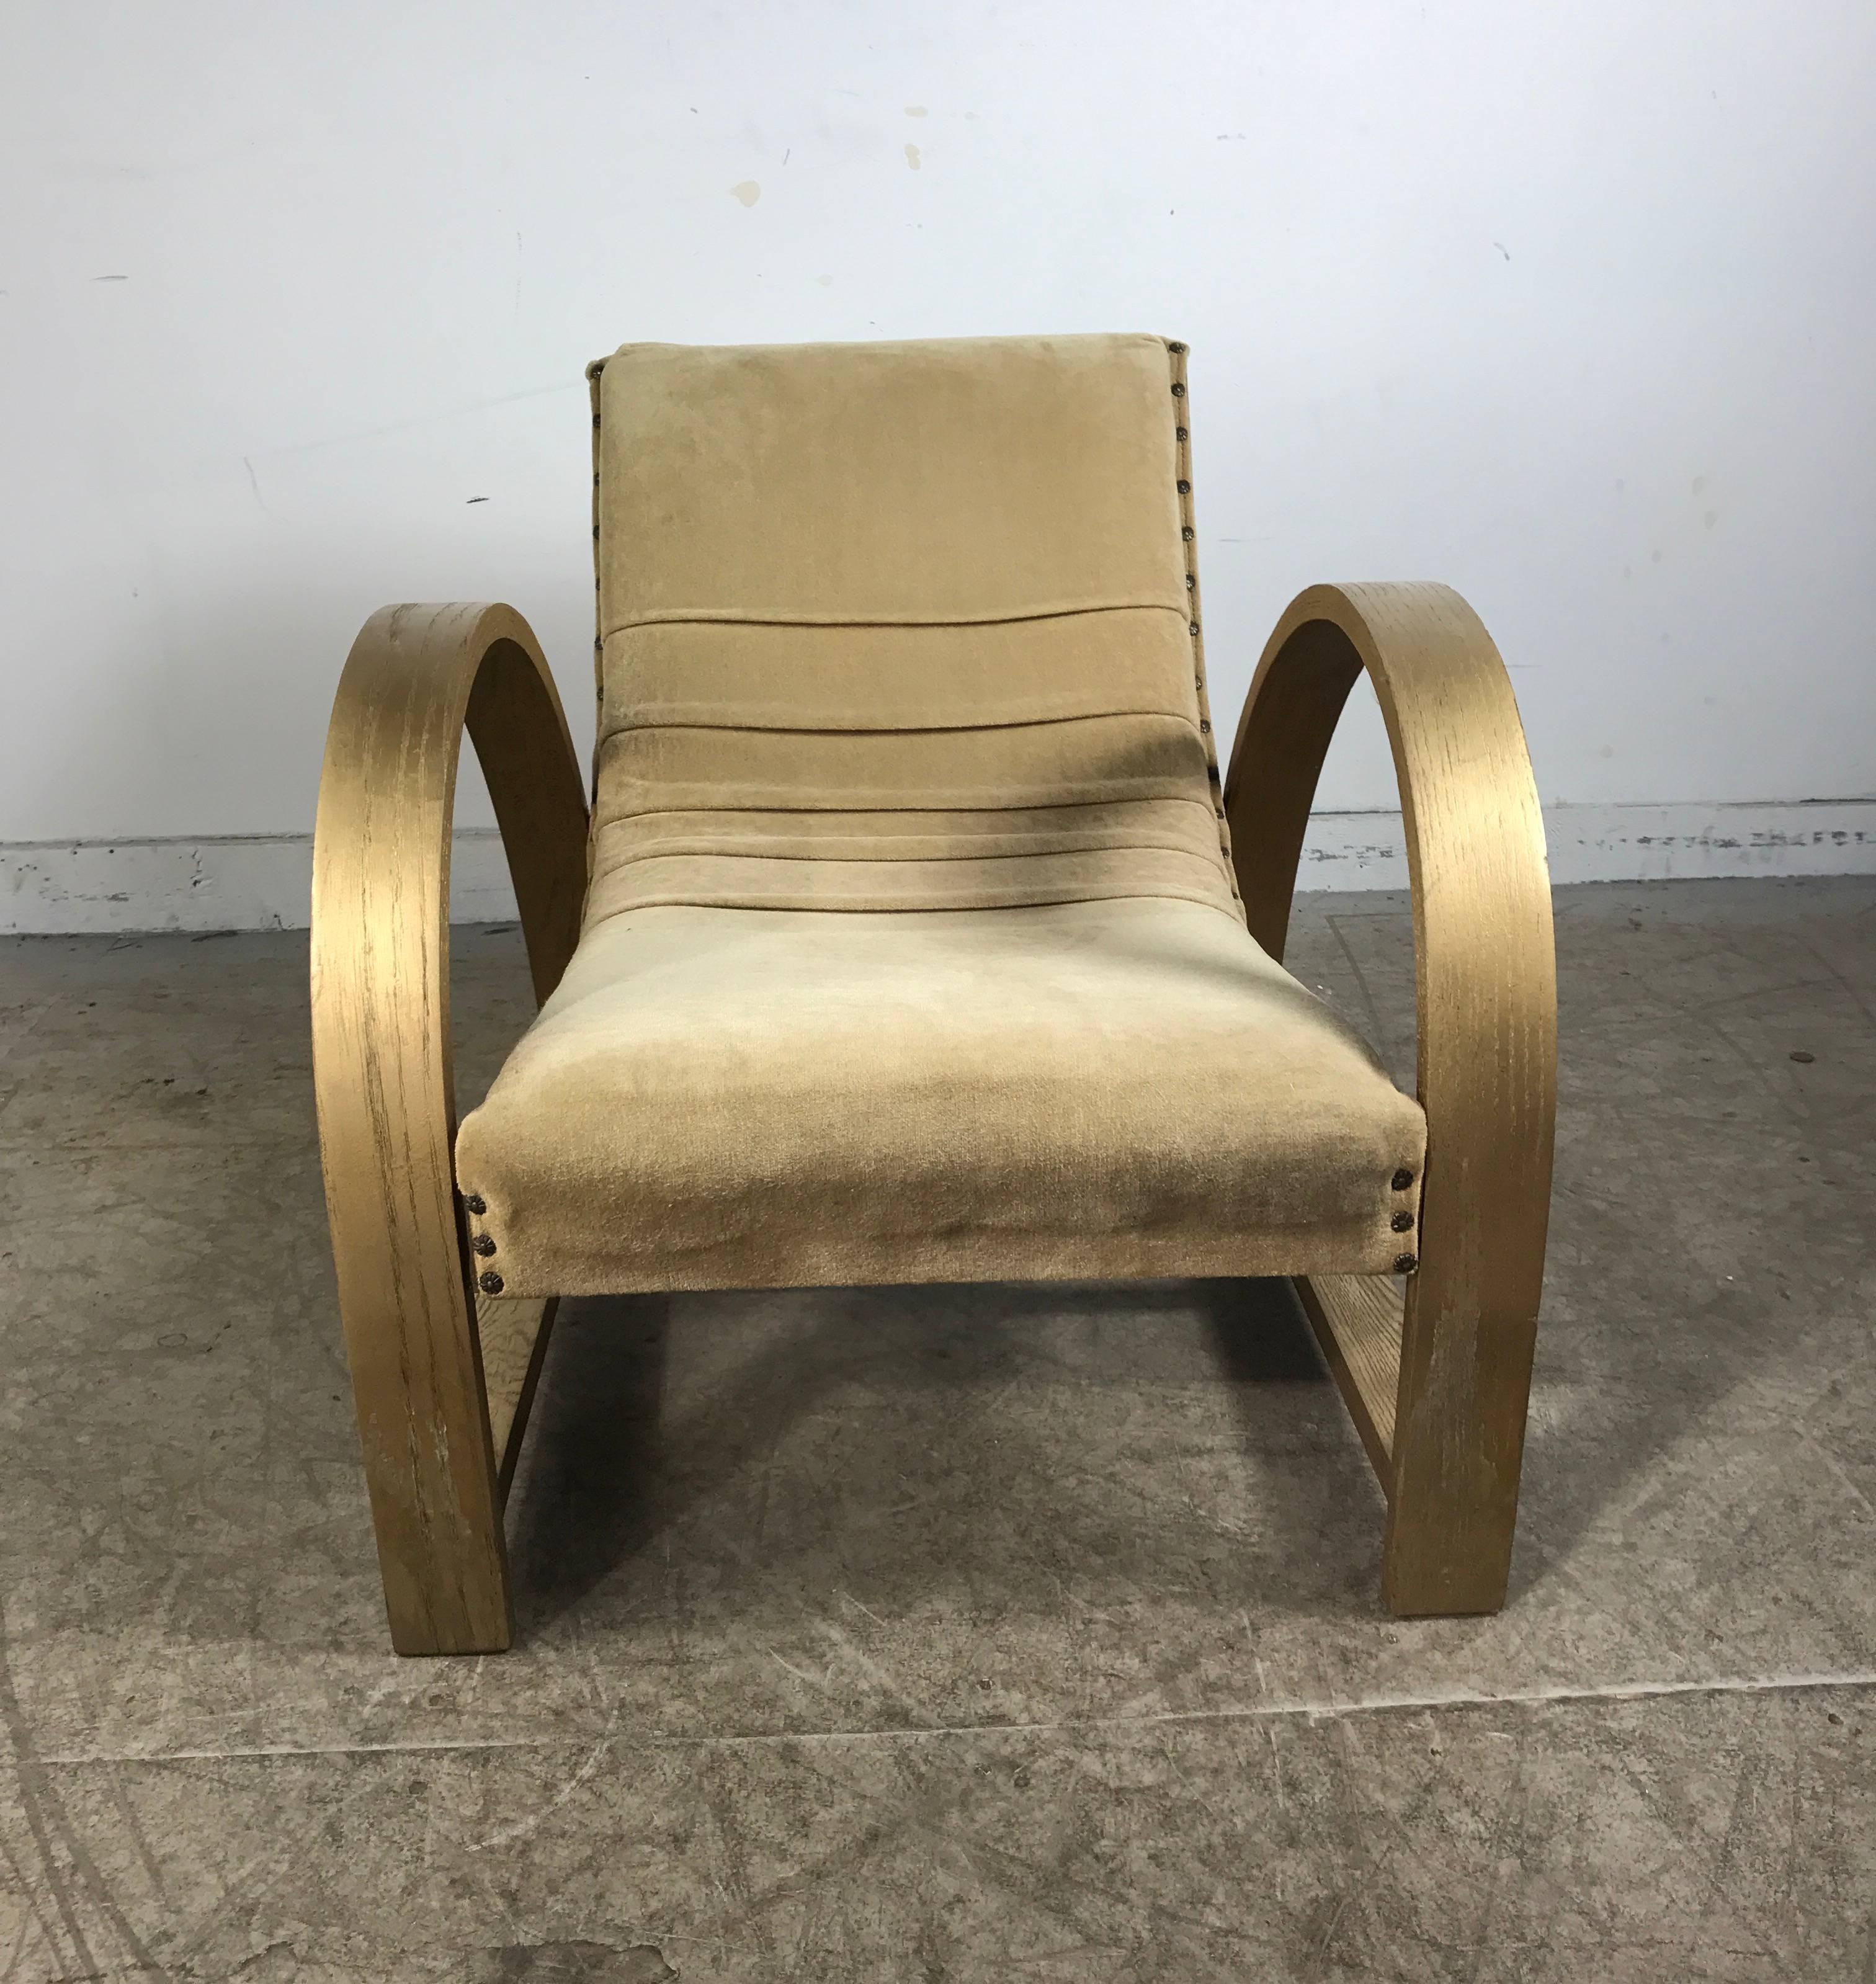 Art-Déco-Sessel, entworfen von Gilbert Rohde für Heywood Wakefield, klassisches Art-Déco-Stromlinien-Design, hervorragende Qualität aus den 1930er Jahren und schwere Federkonstruktion. Gestell aus goldfarbenem Holz, weiche Samtpolsterung, extrem